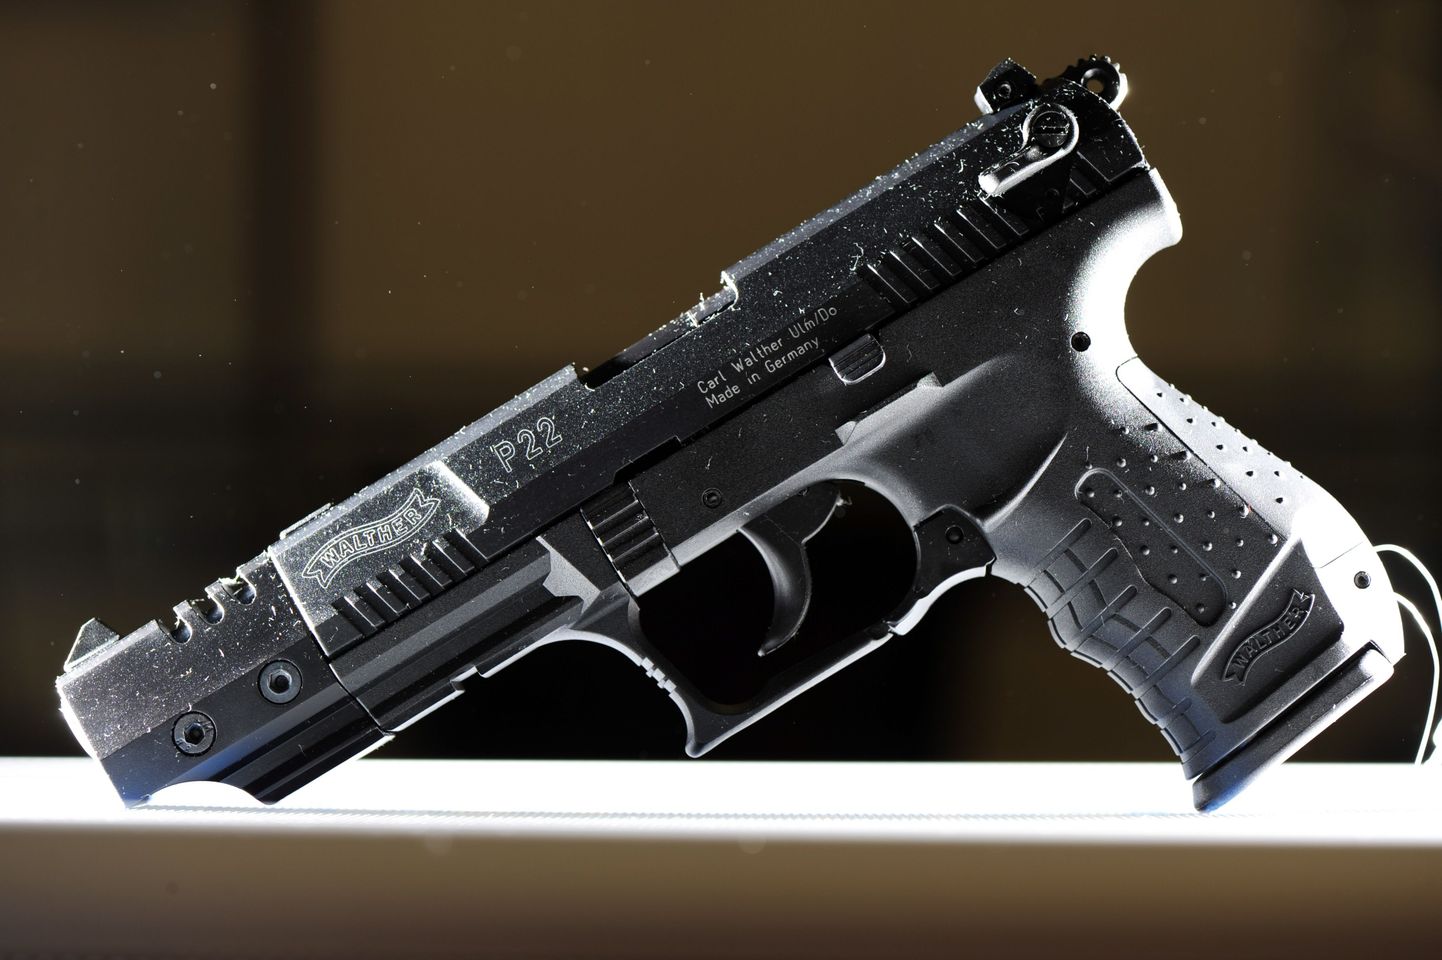 Poolautomaatne püstol Walther P22. Foto on illustratiivne.